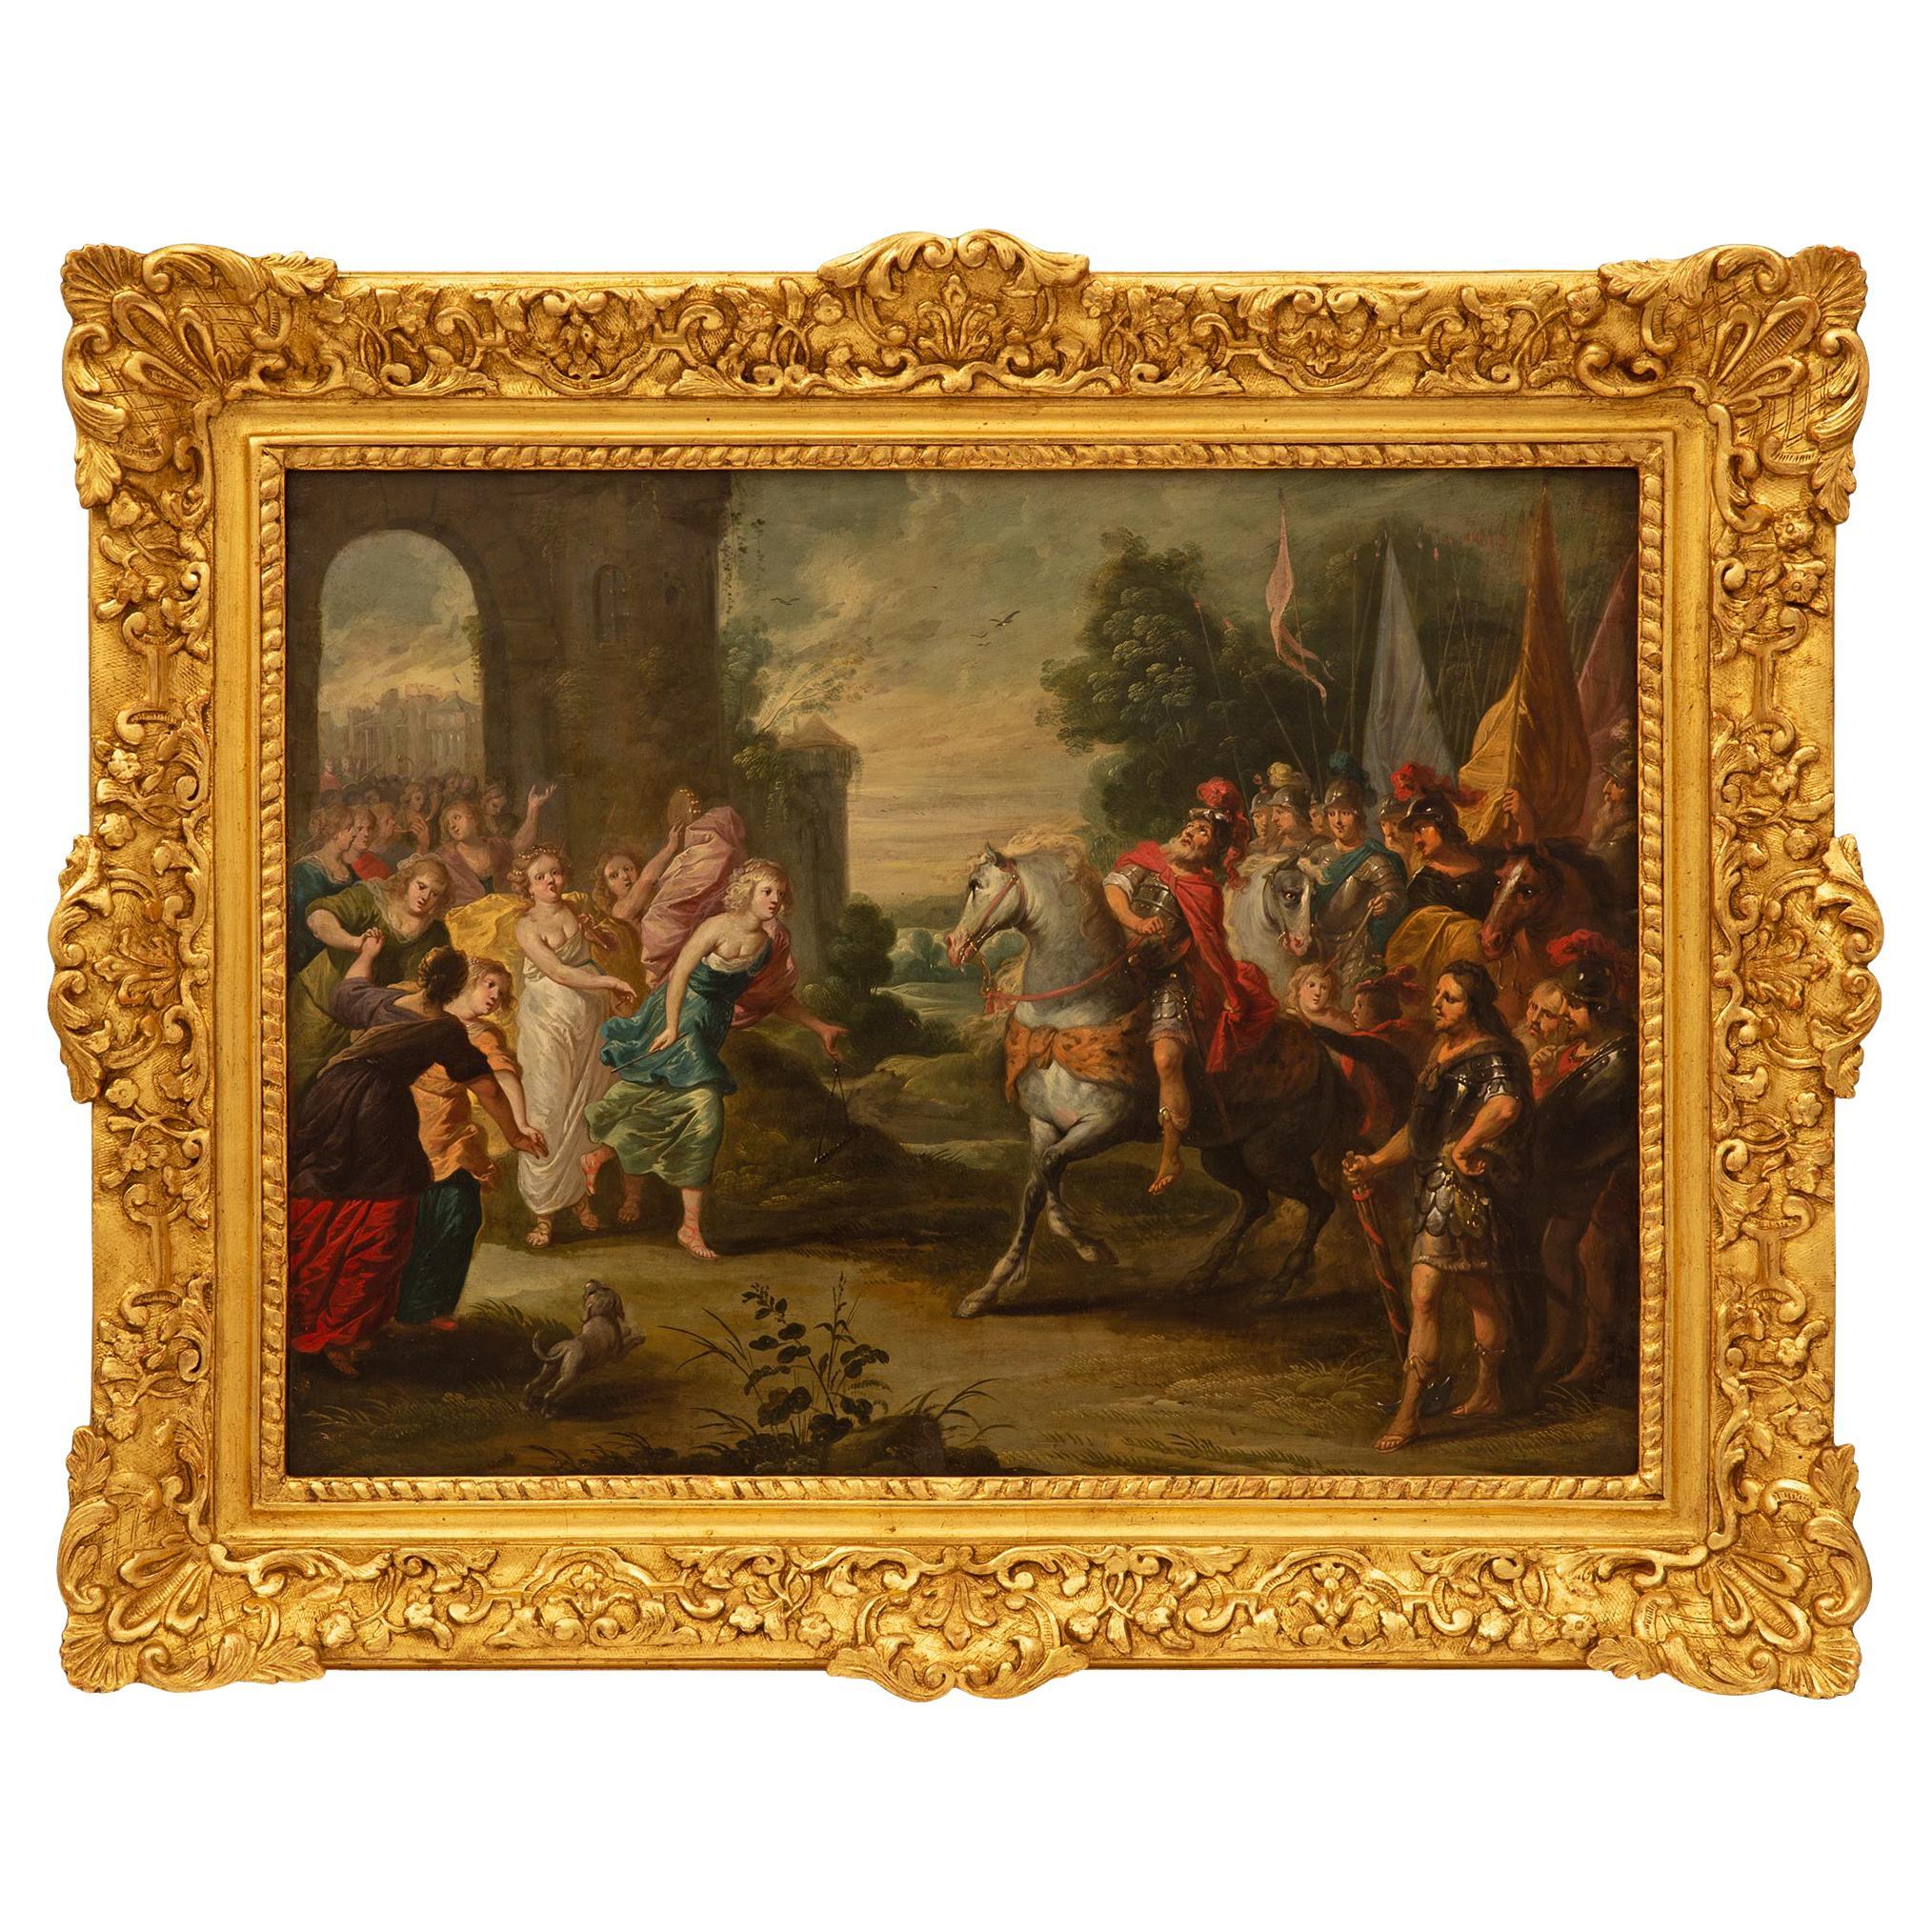 Flämisches Gemälde, Öl auf Leinwand, spätes 17. Jahrhundert/ frühes 18. Jahrhundert